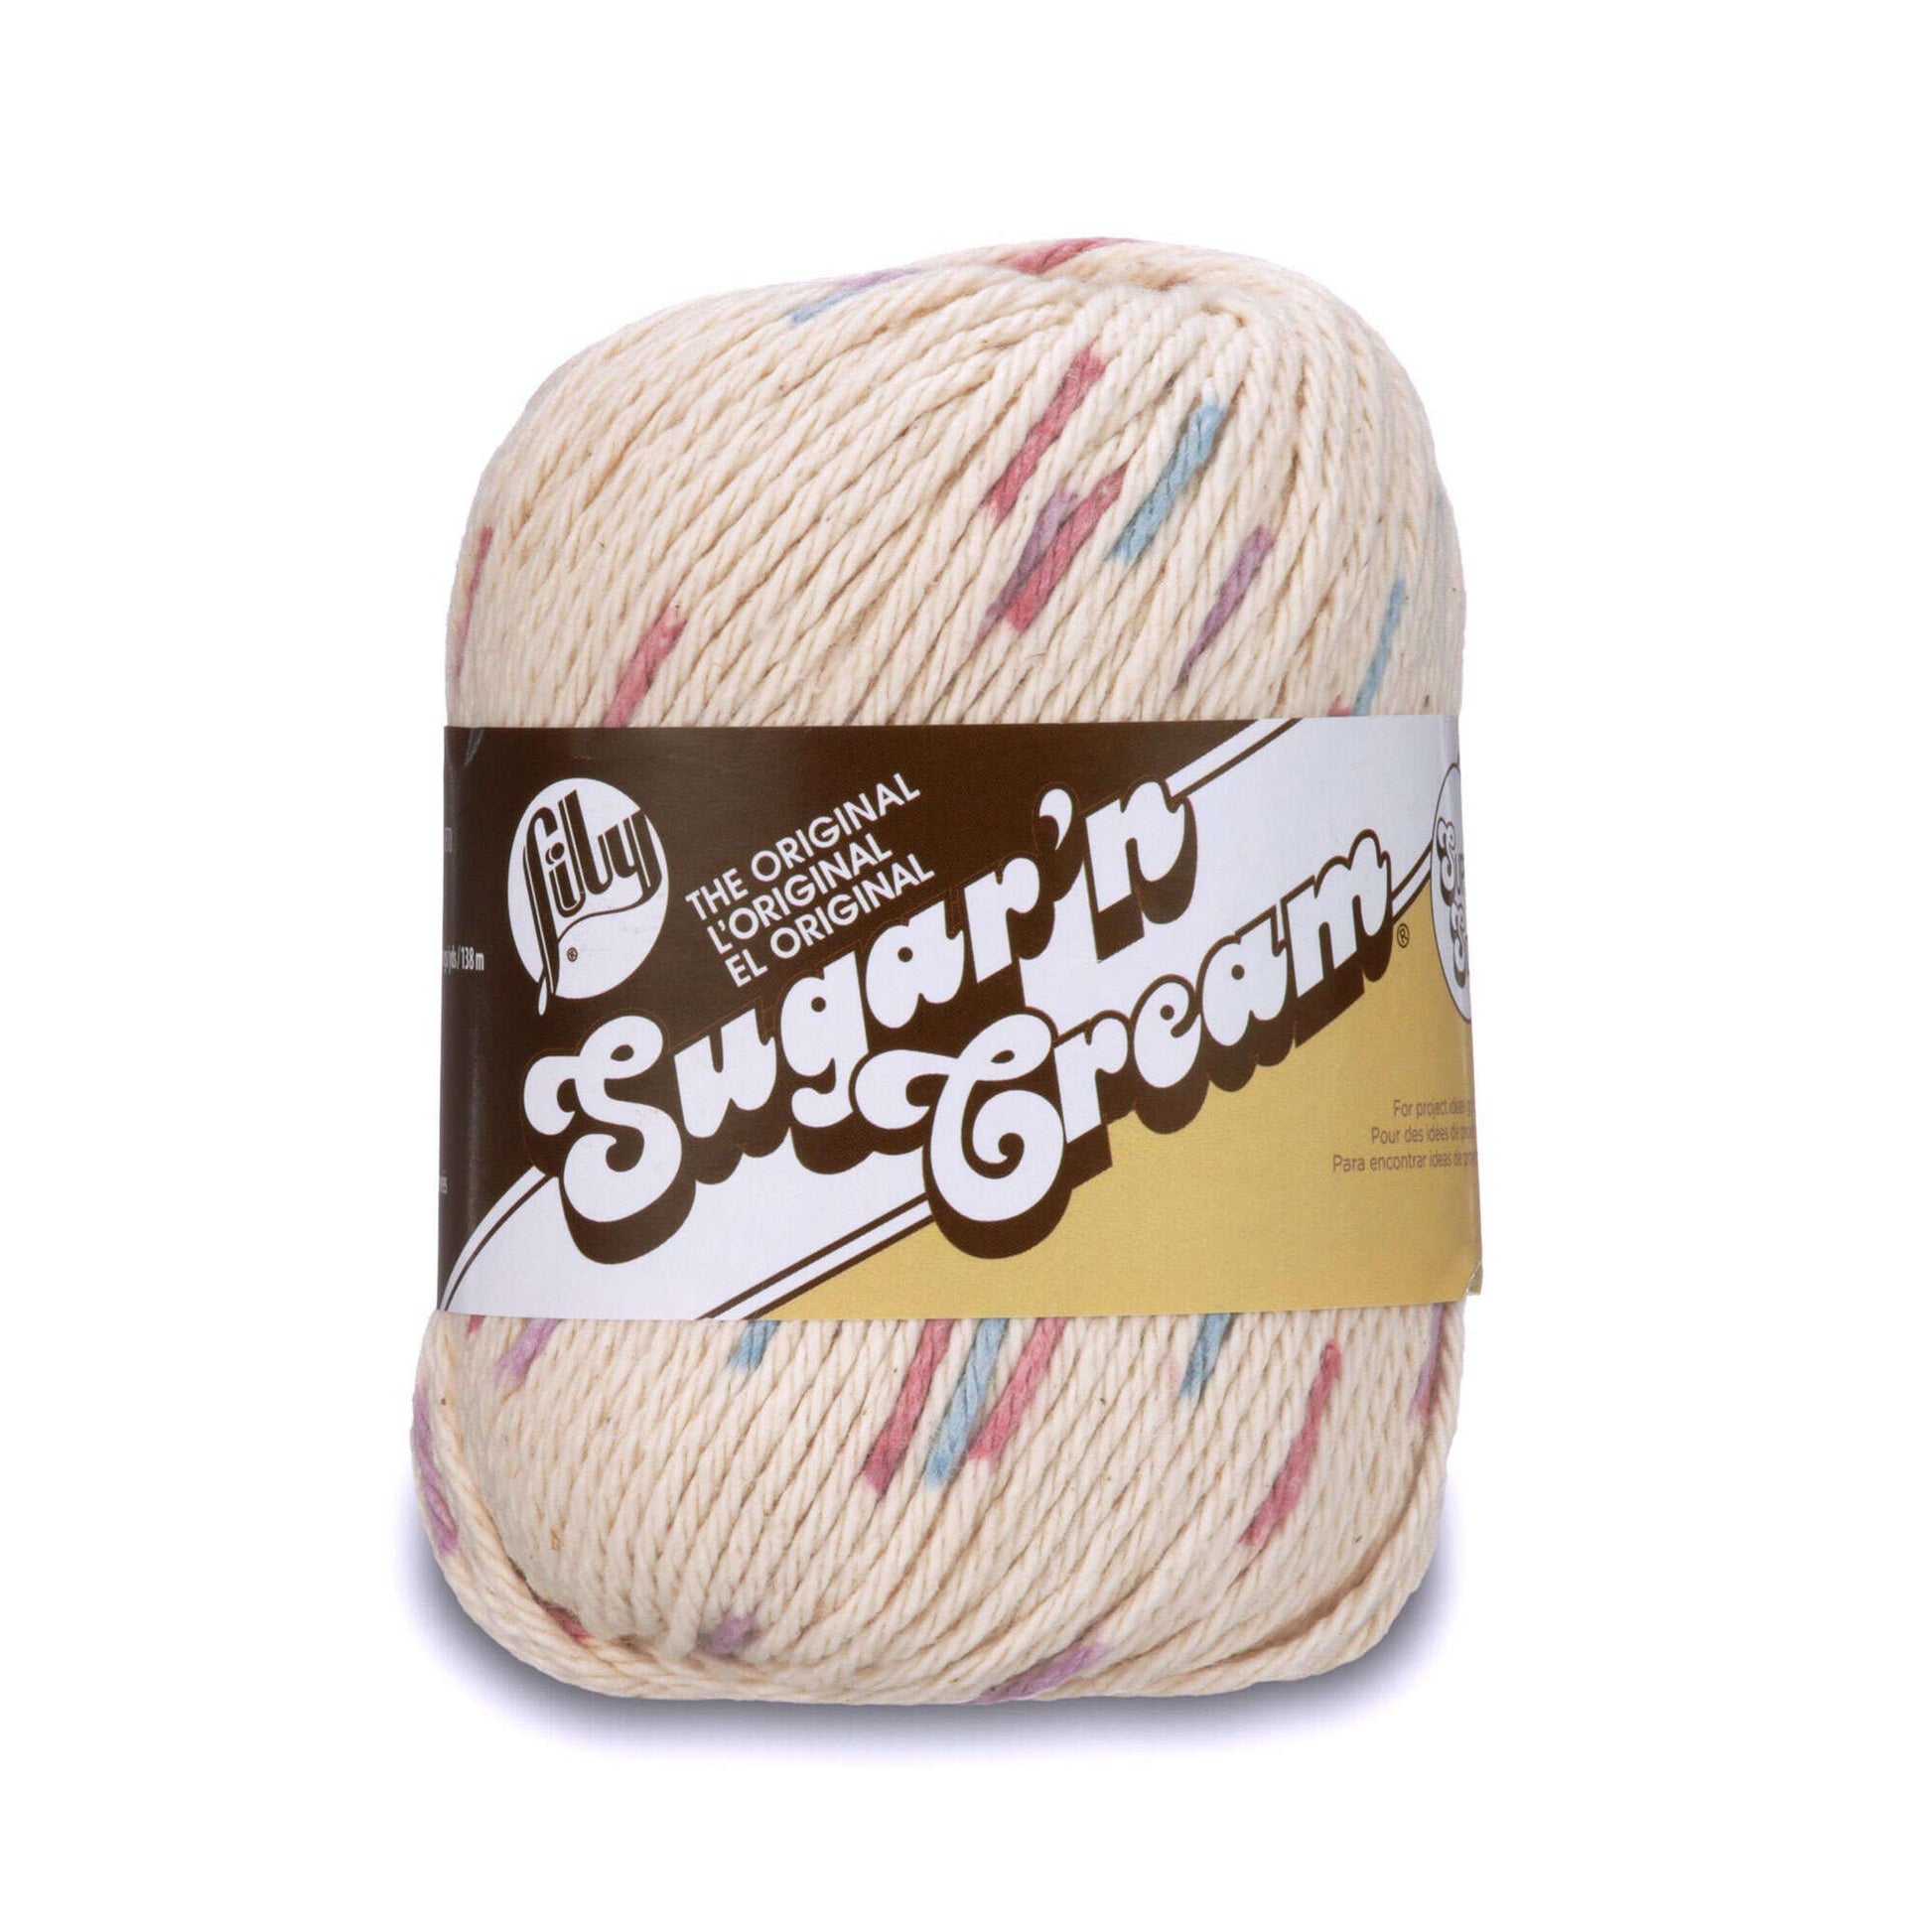 Lily Sugar'n Cream Super Size Ombres Yarn Potpourri